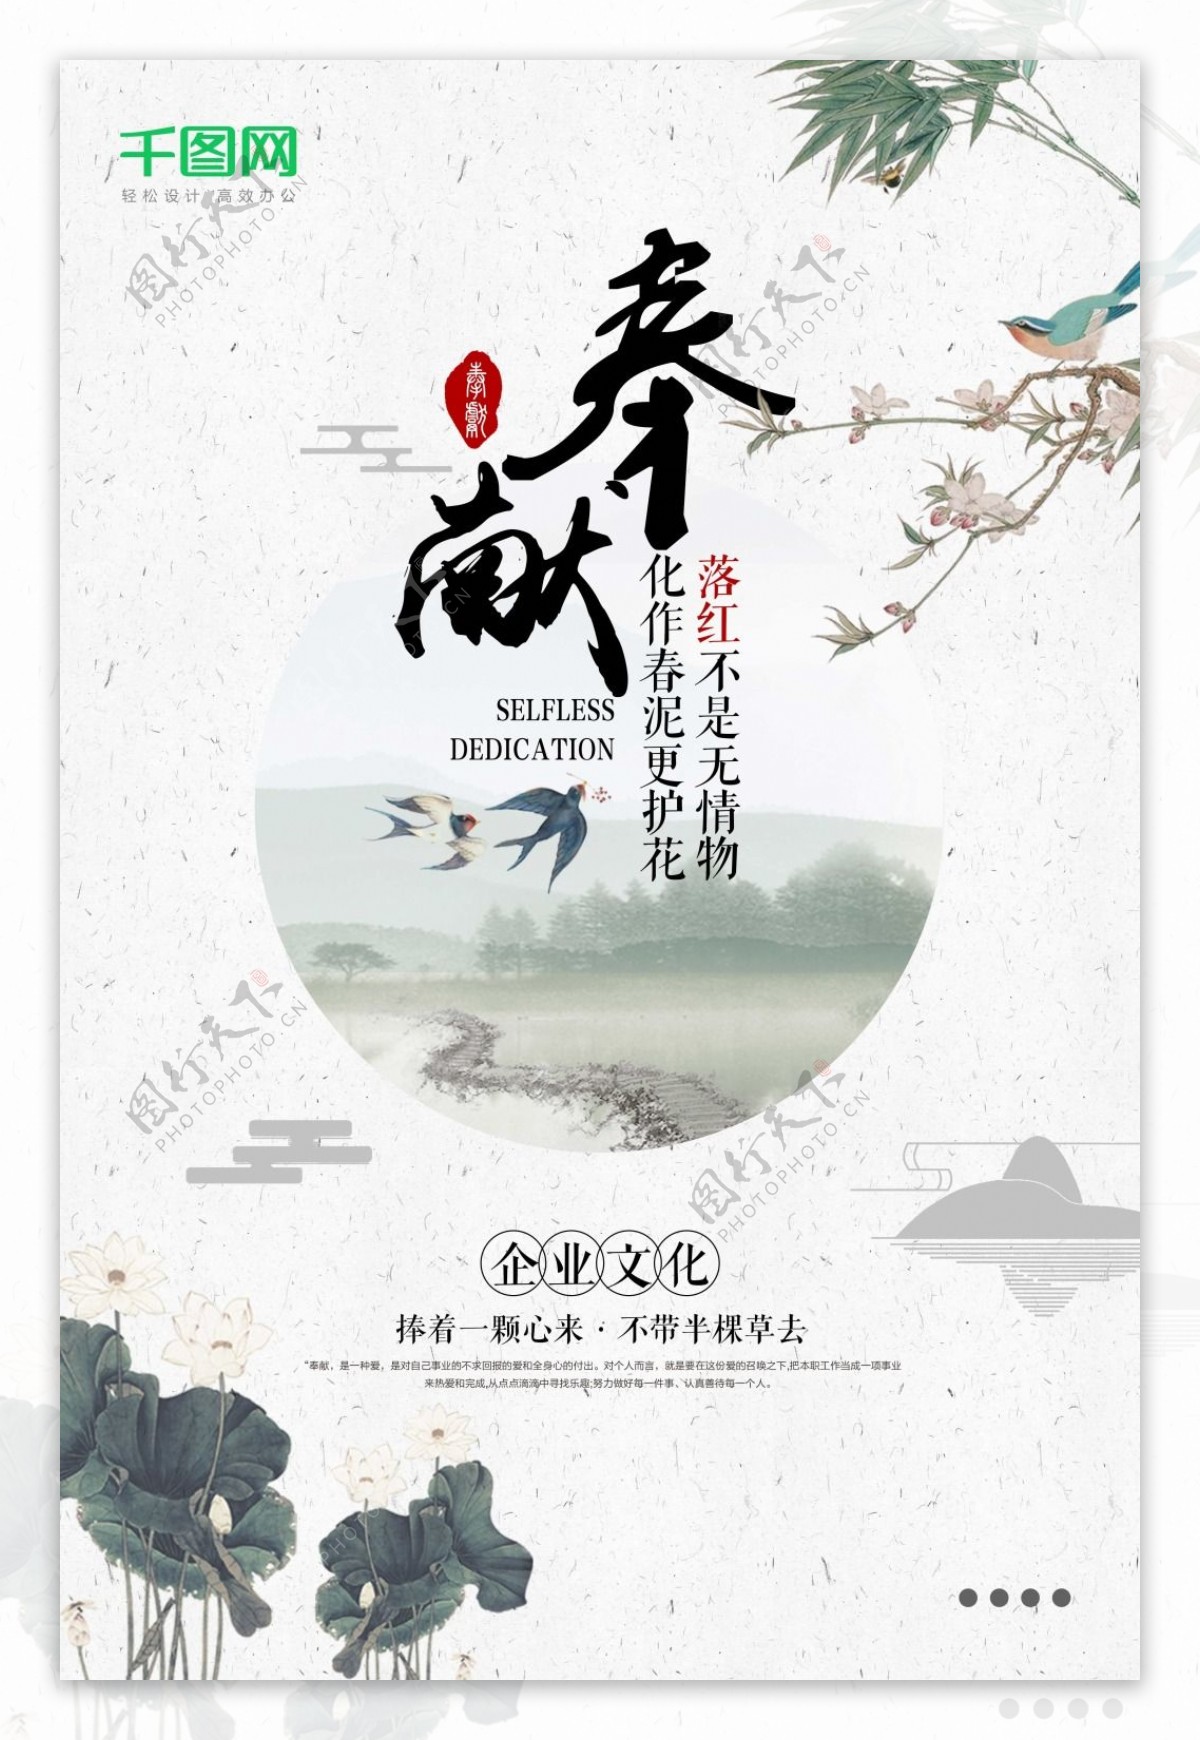 中国风创意企业文化宣传海报